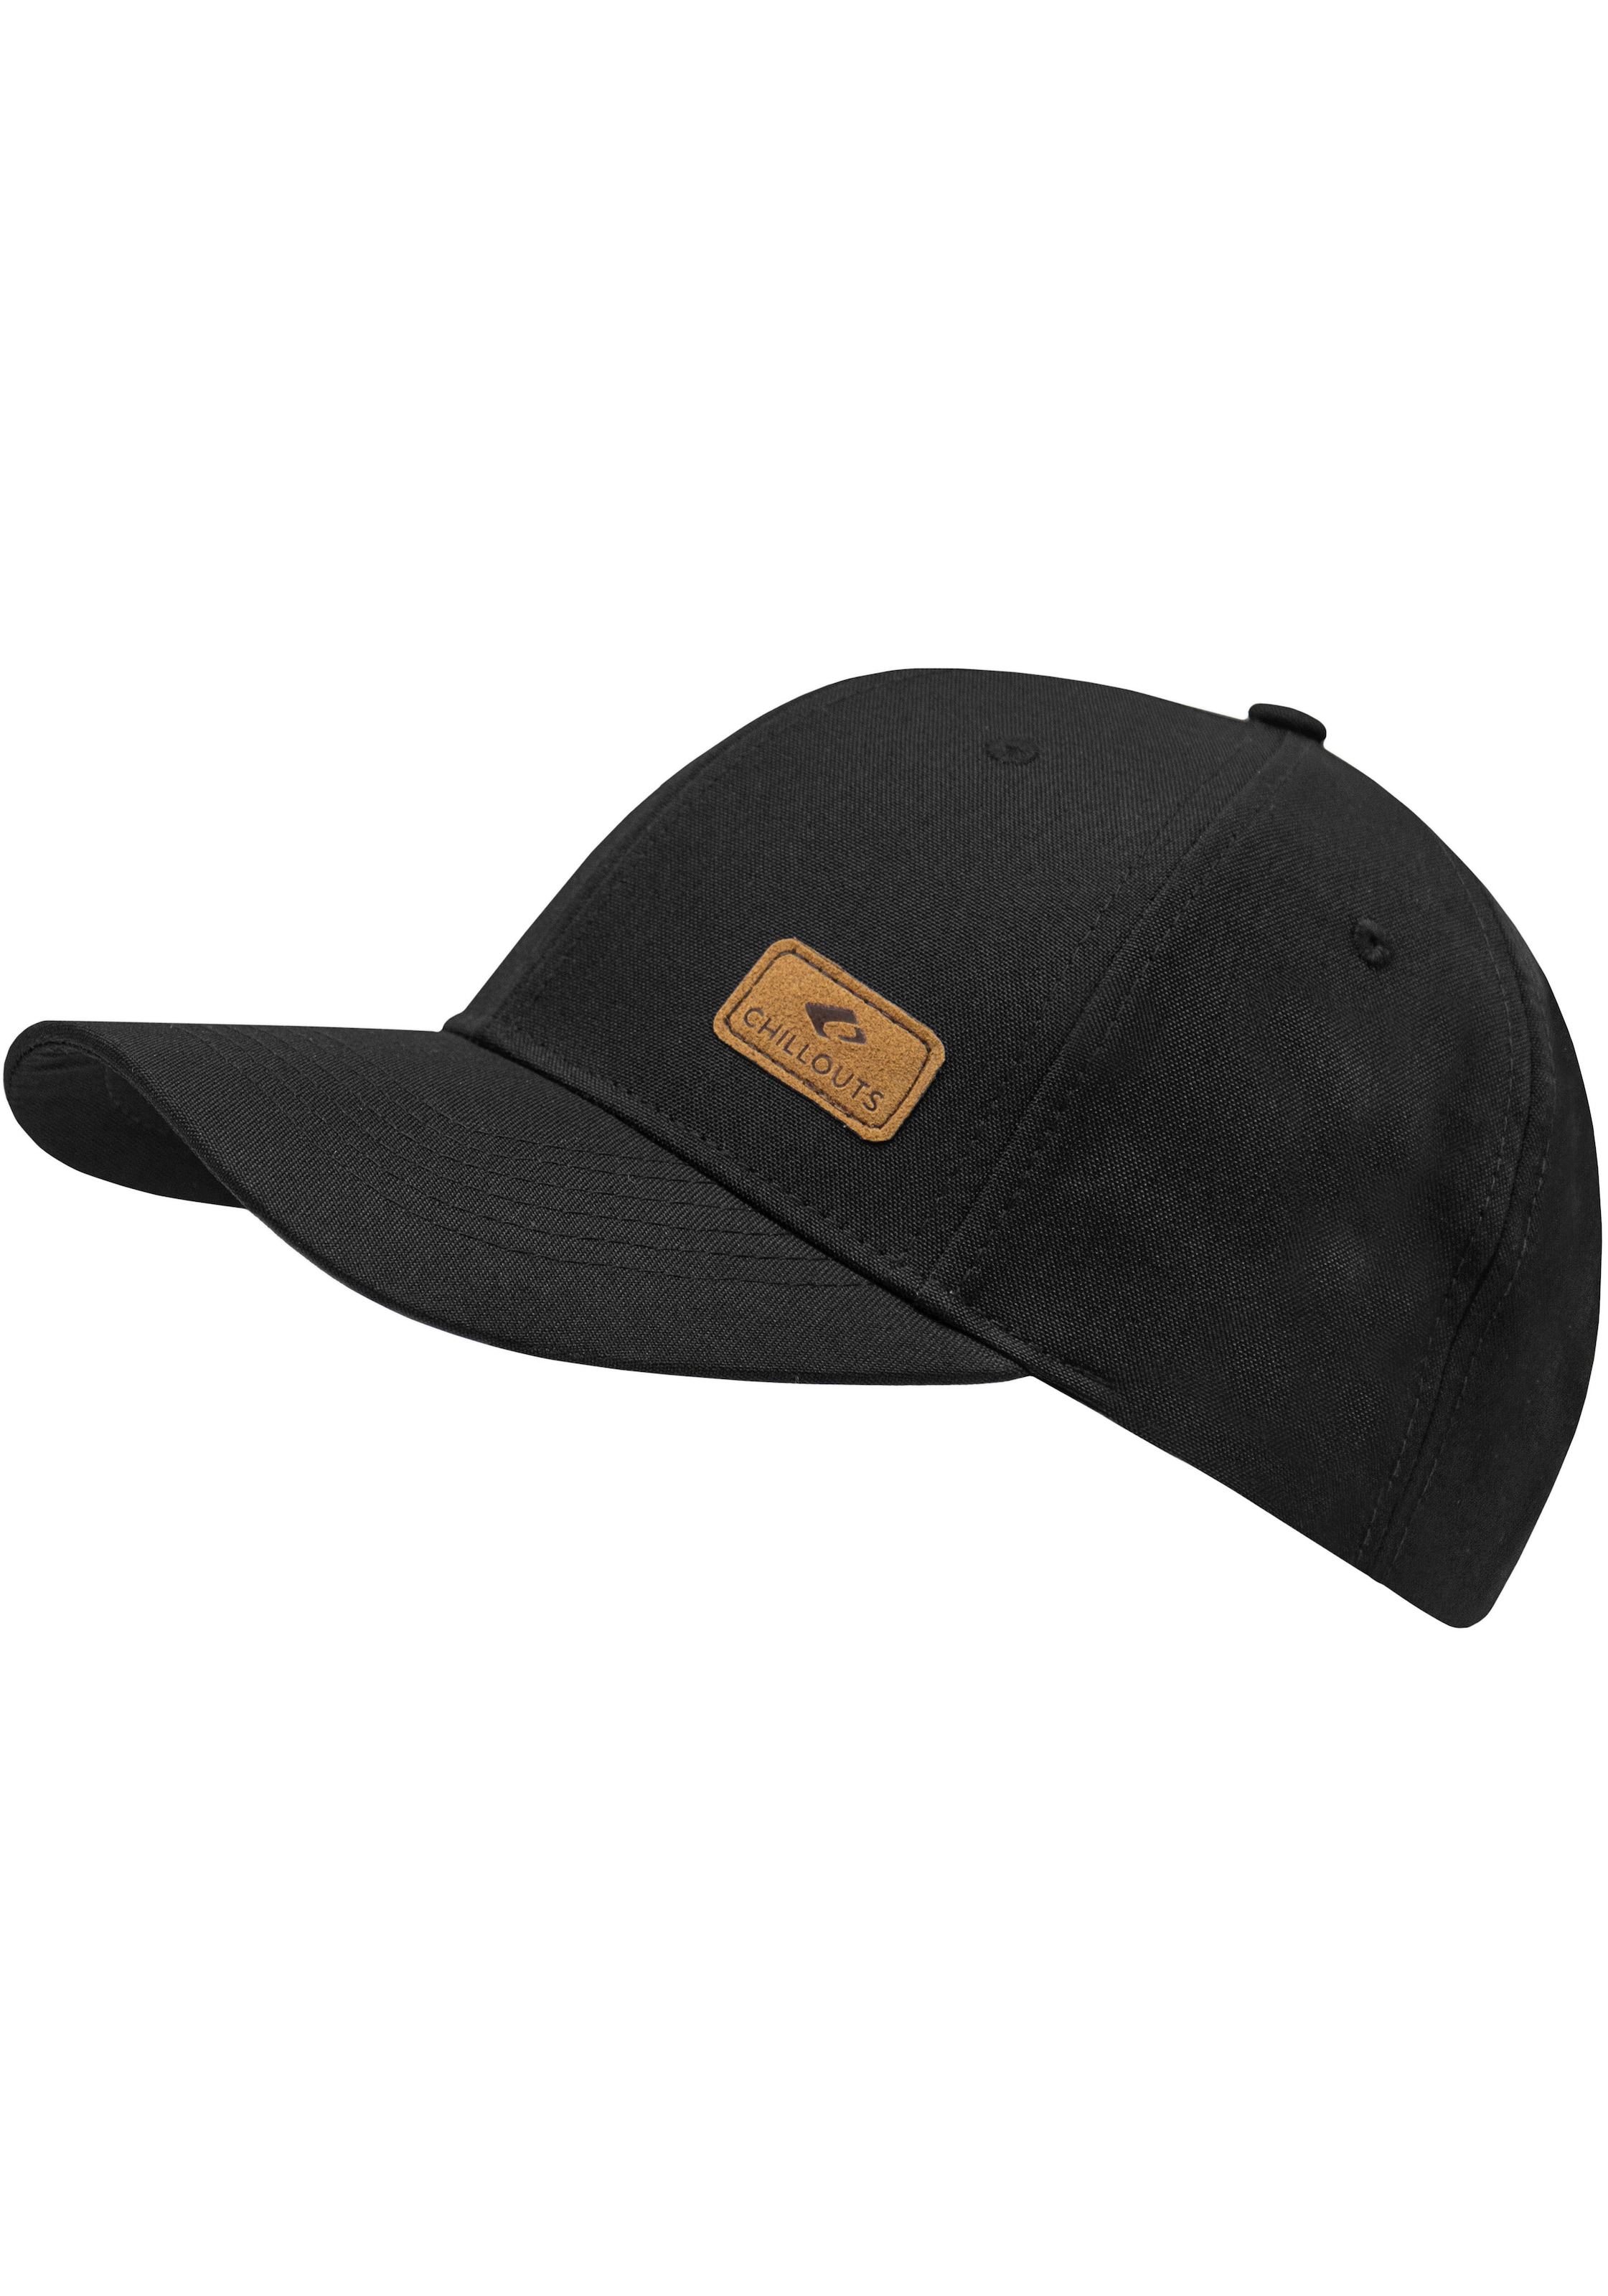 chillouts Baseball Cap, Amadora verstellbar One in im Hat Online-Shop kaufen Optik, melierter Size